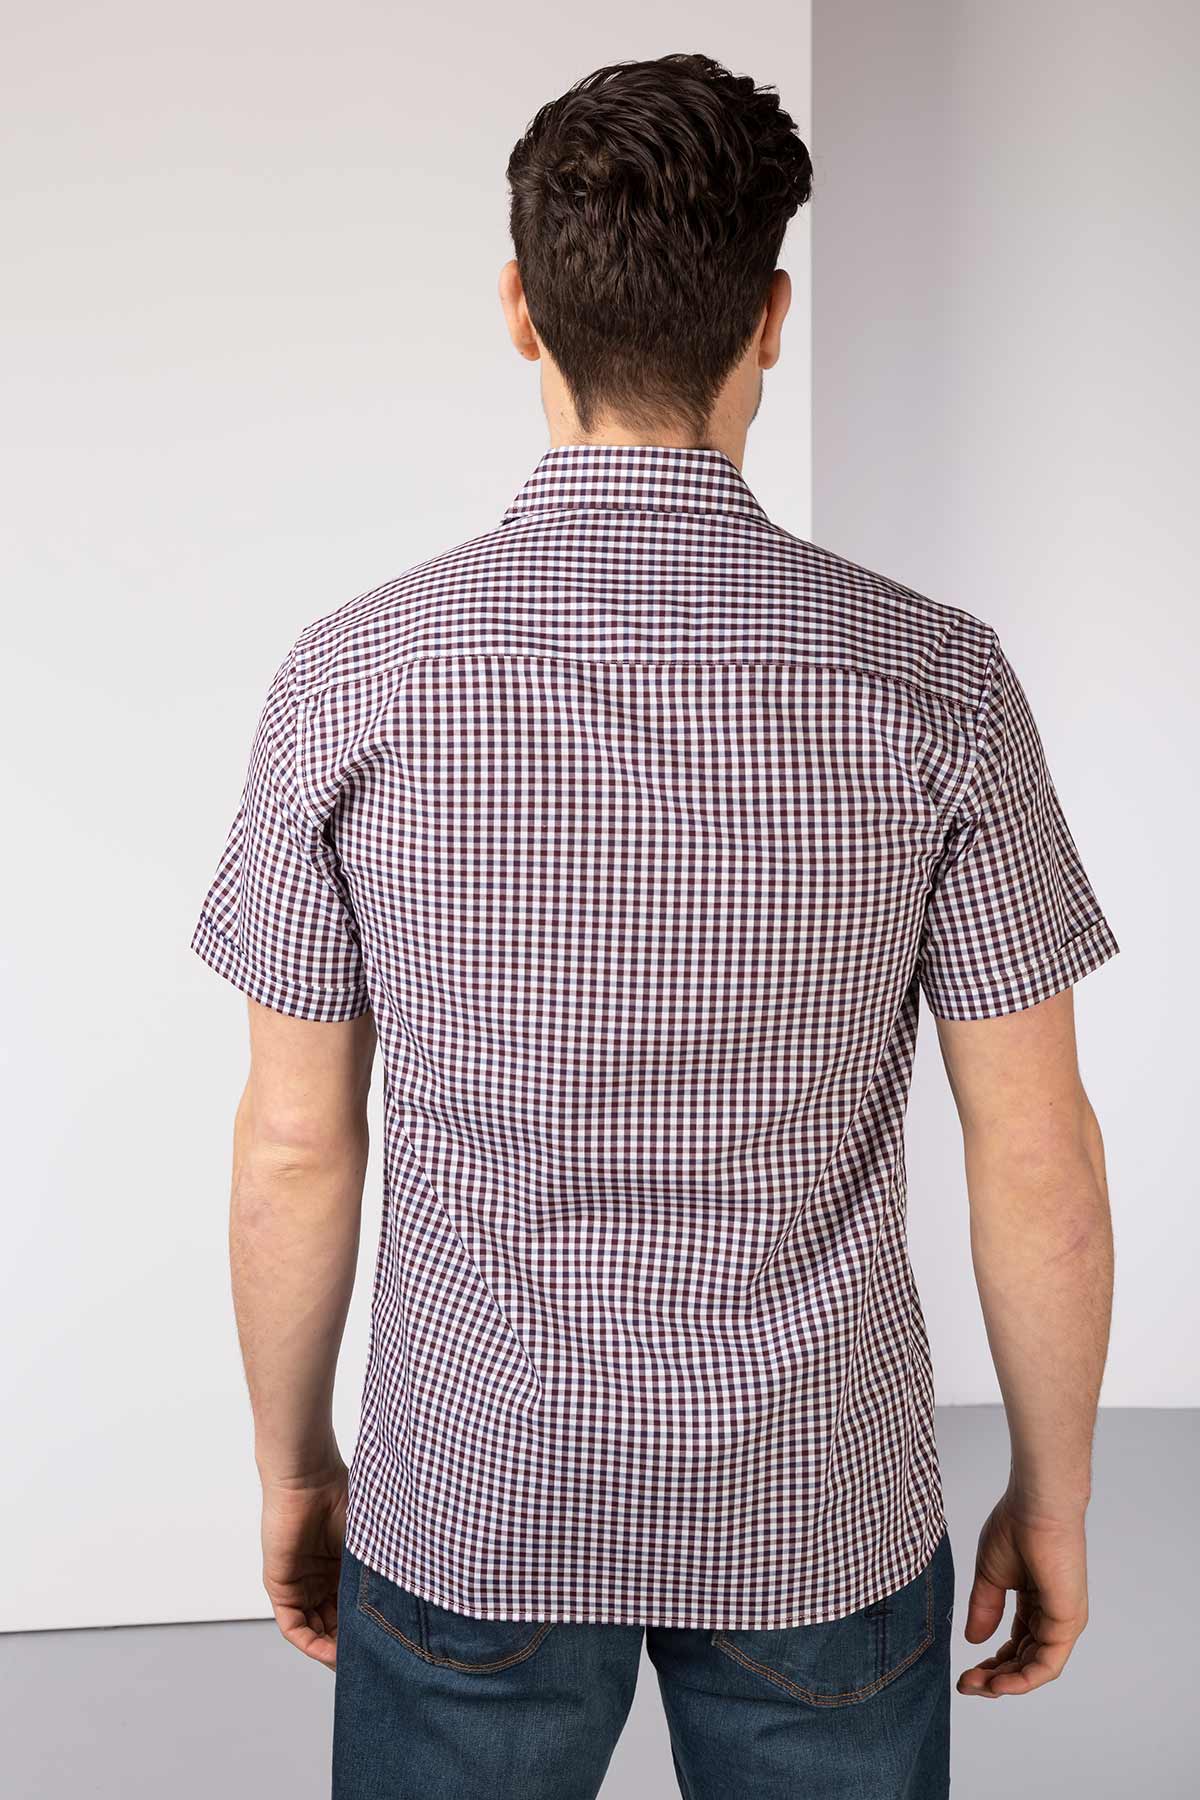 Mens Short Sleeved Shirts UK | Short Sleeved Shirts for Men | Rydale